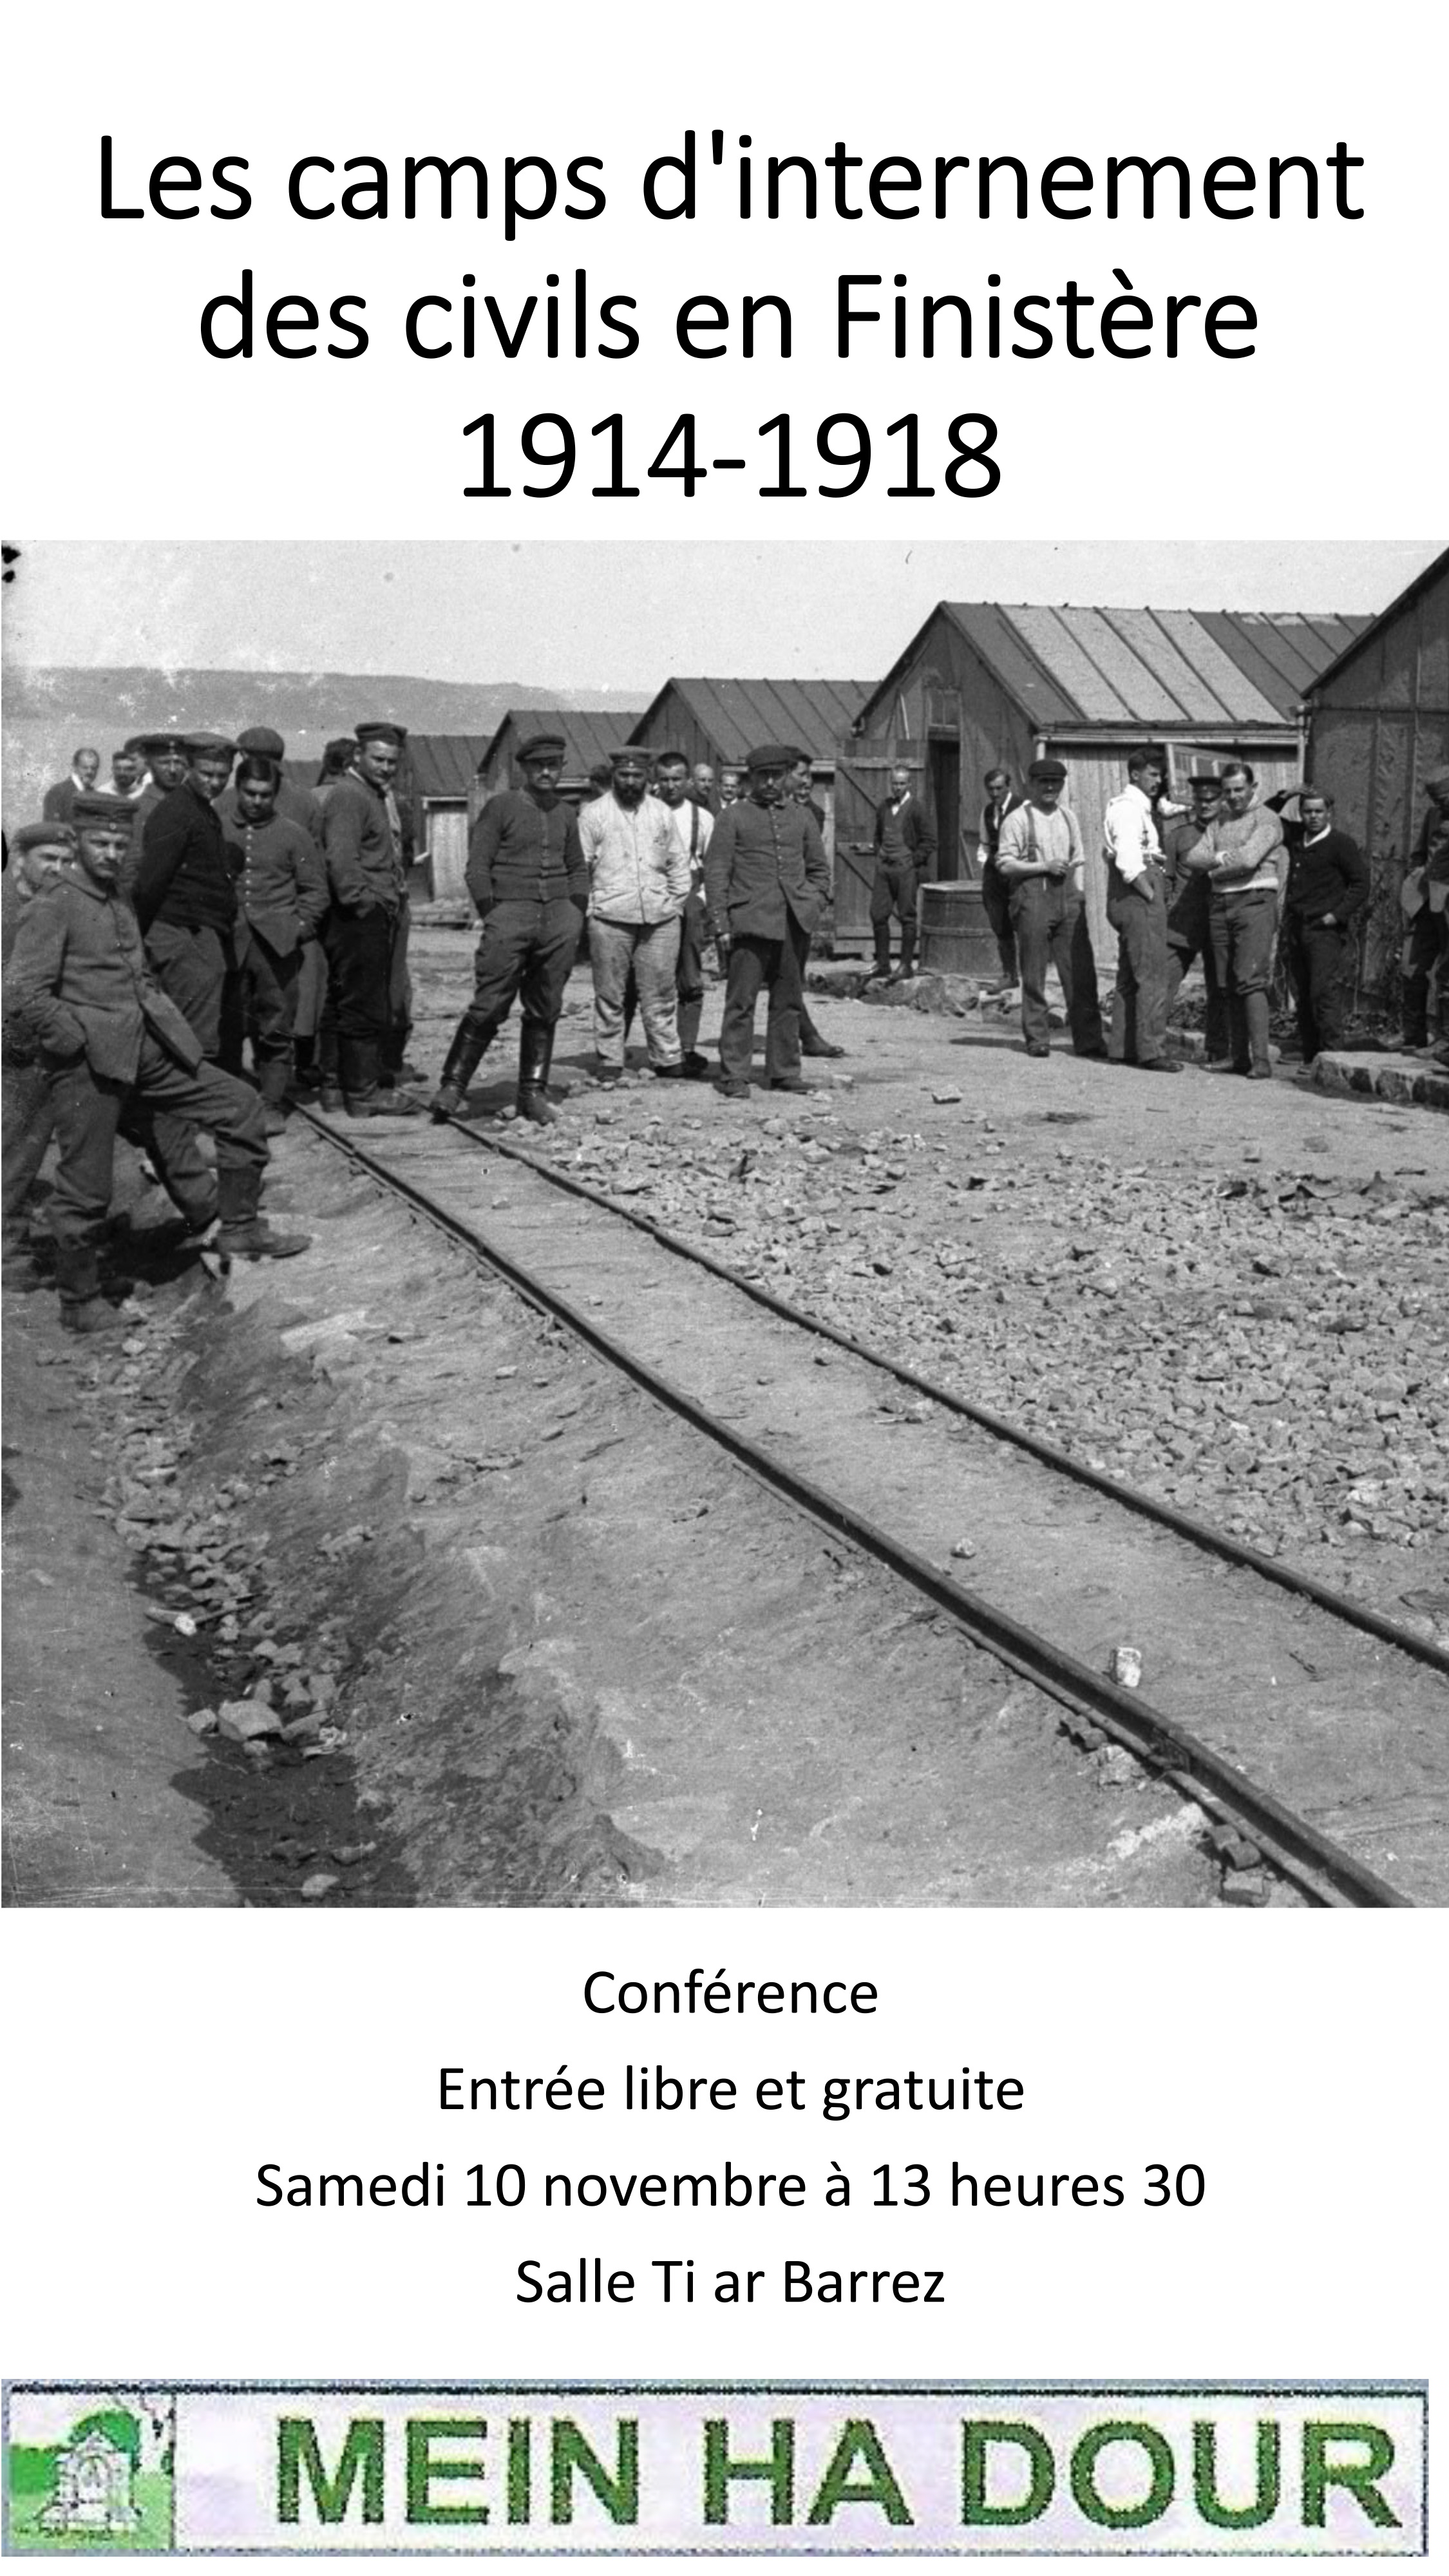 Les camps d'internement des civils en Finistère 1914-1918